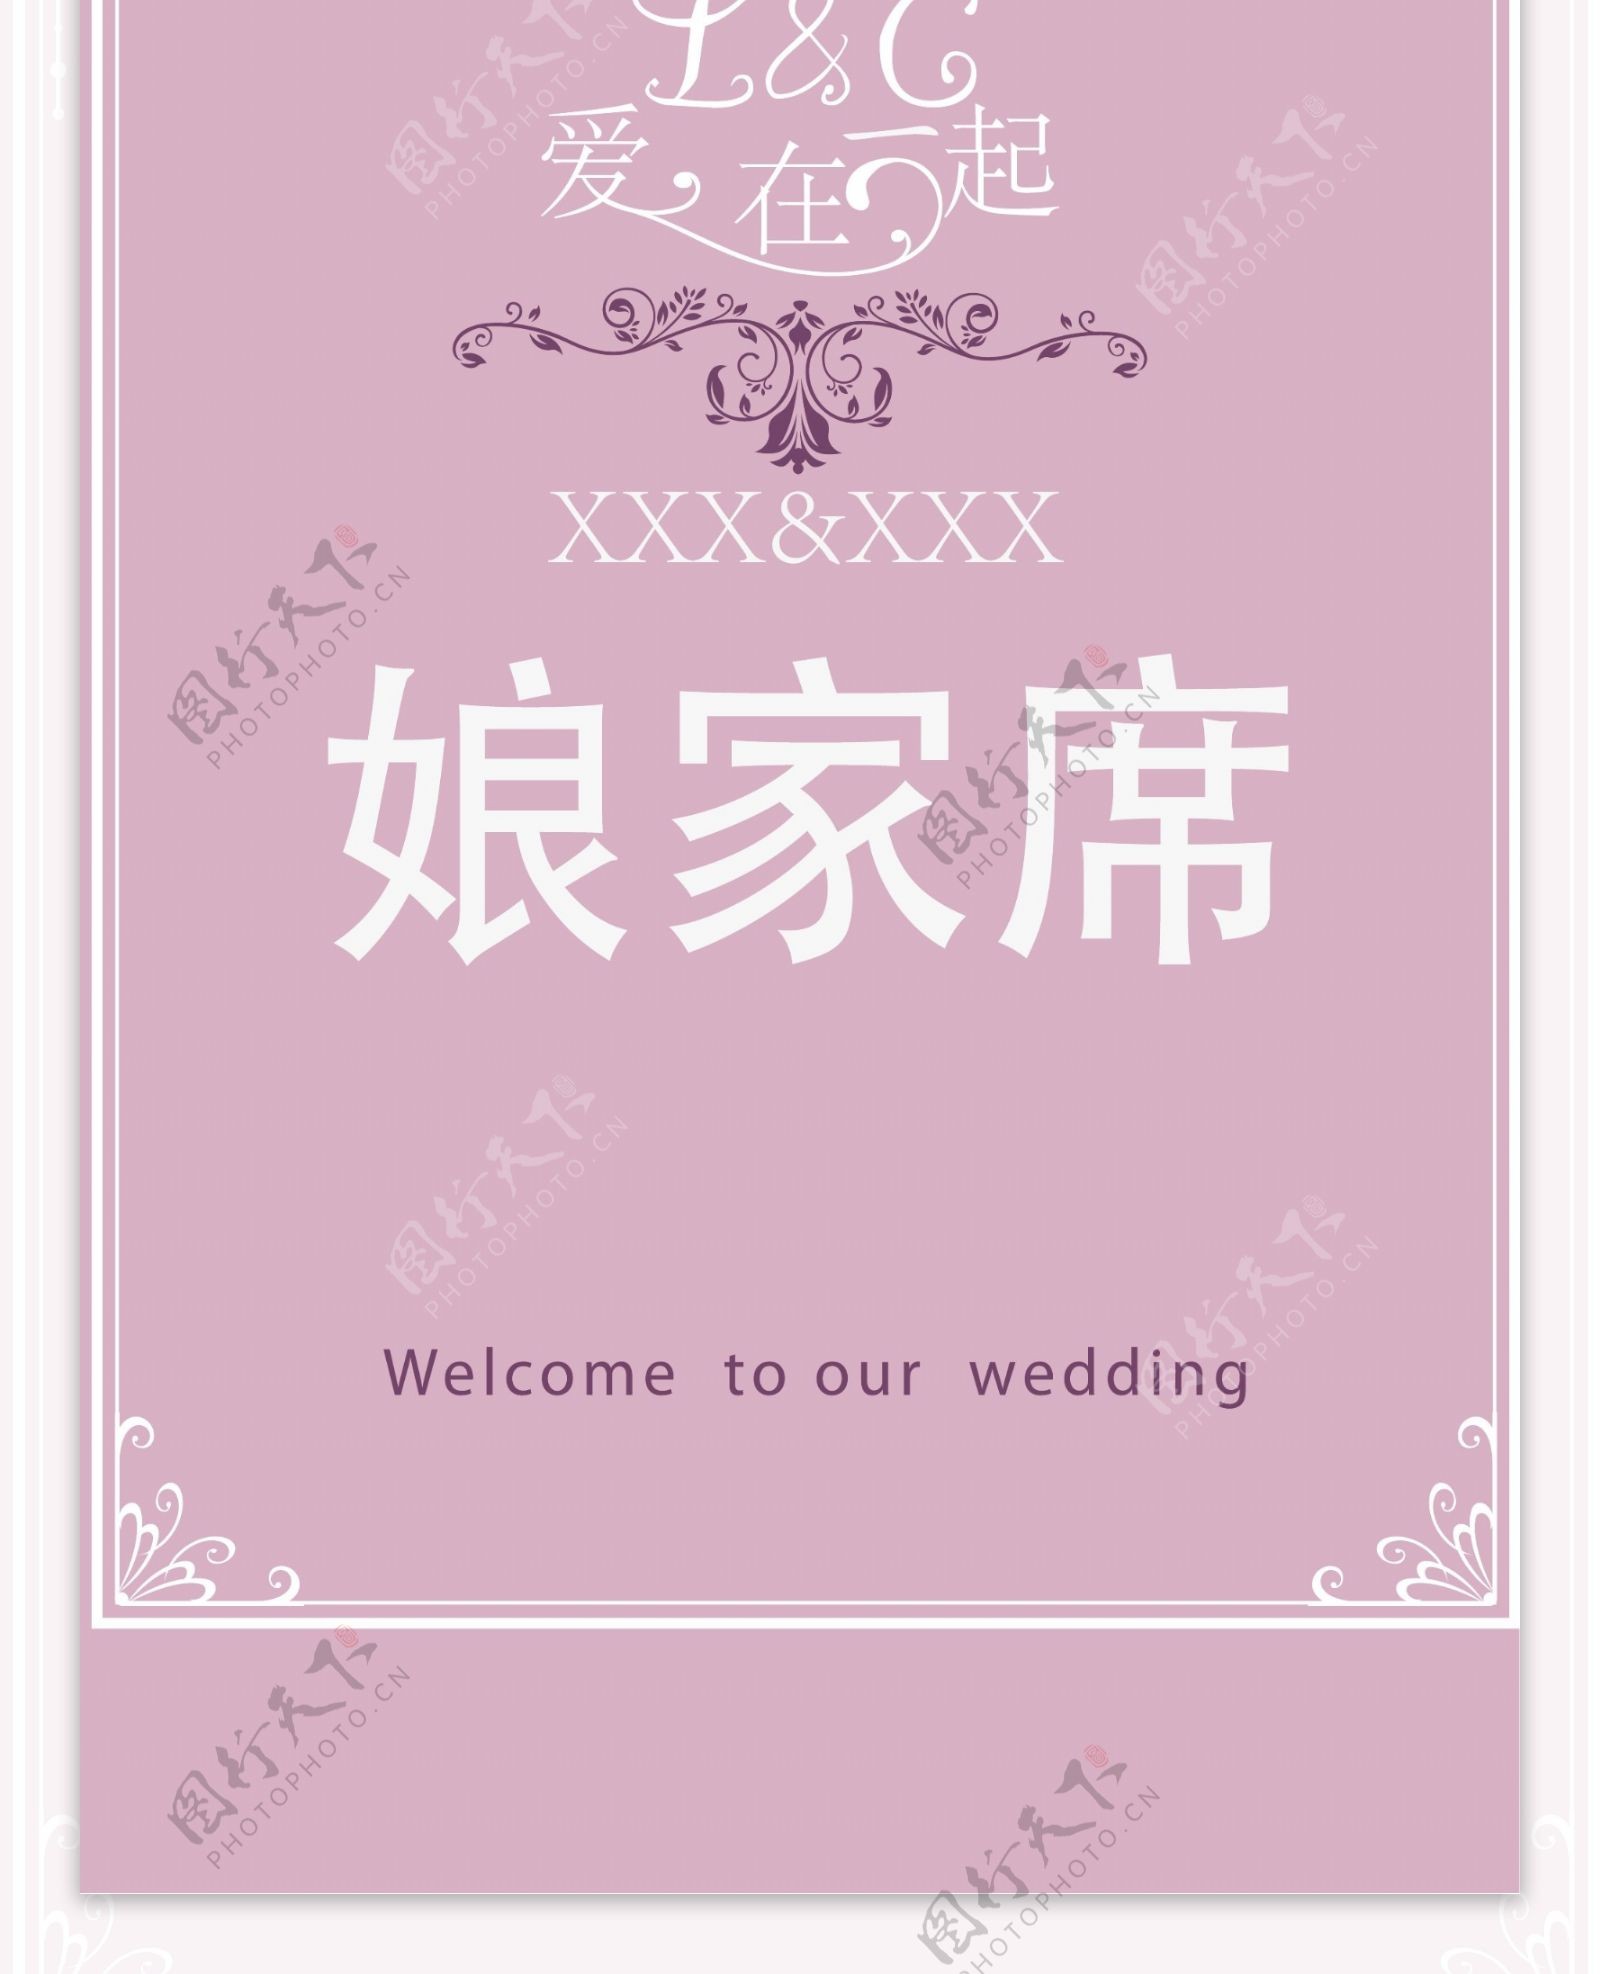 婚庆桌卡设计图片